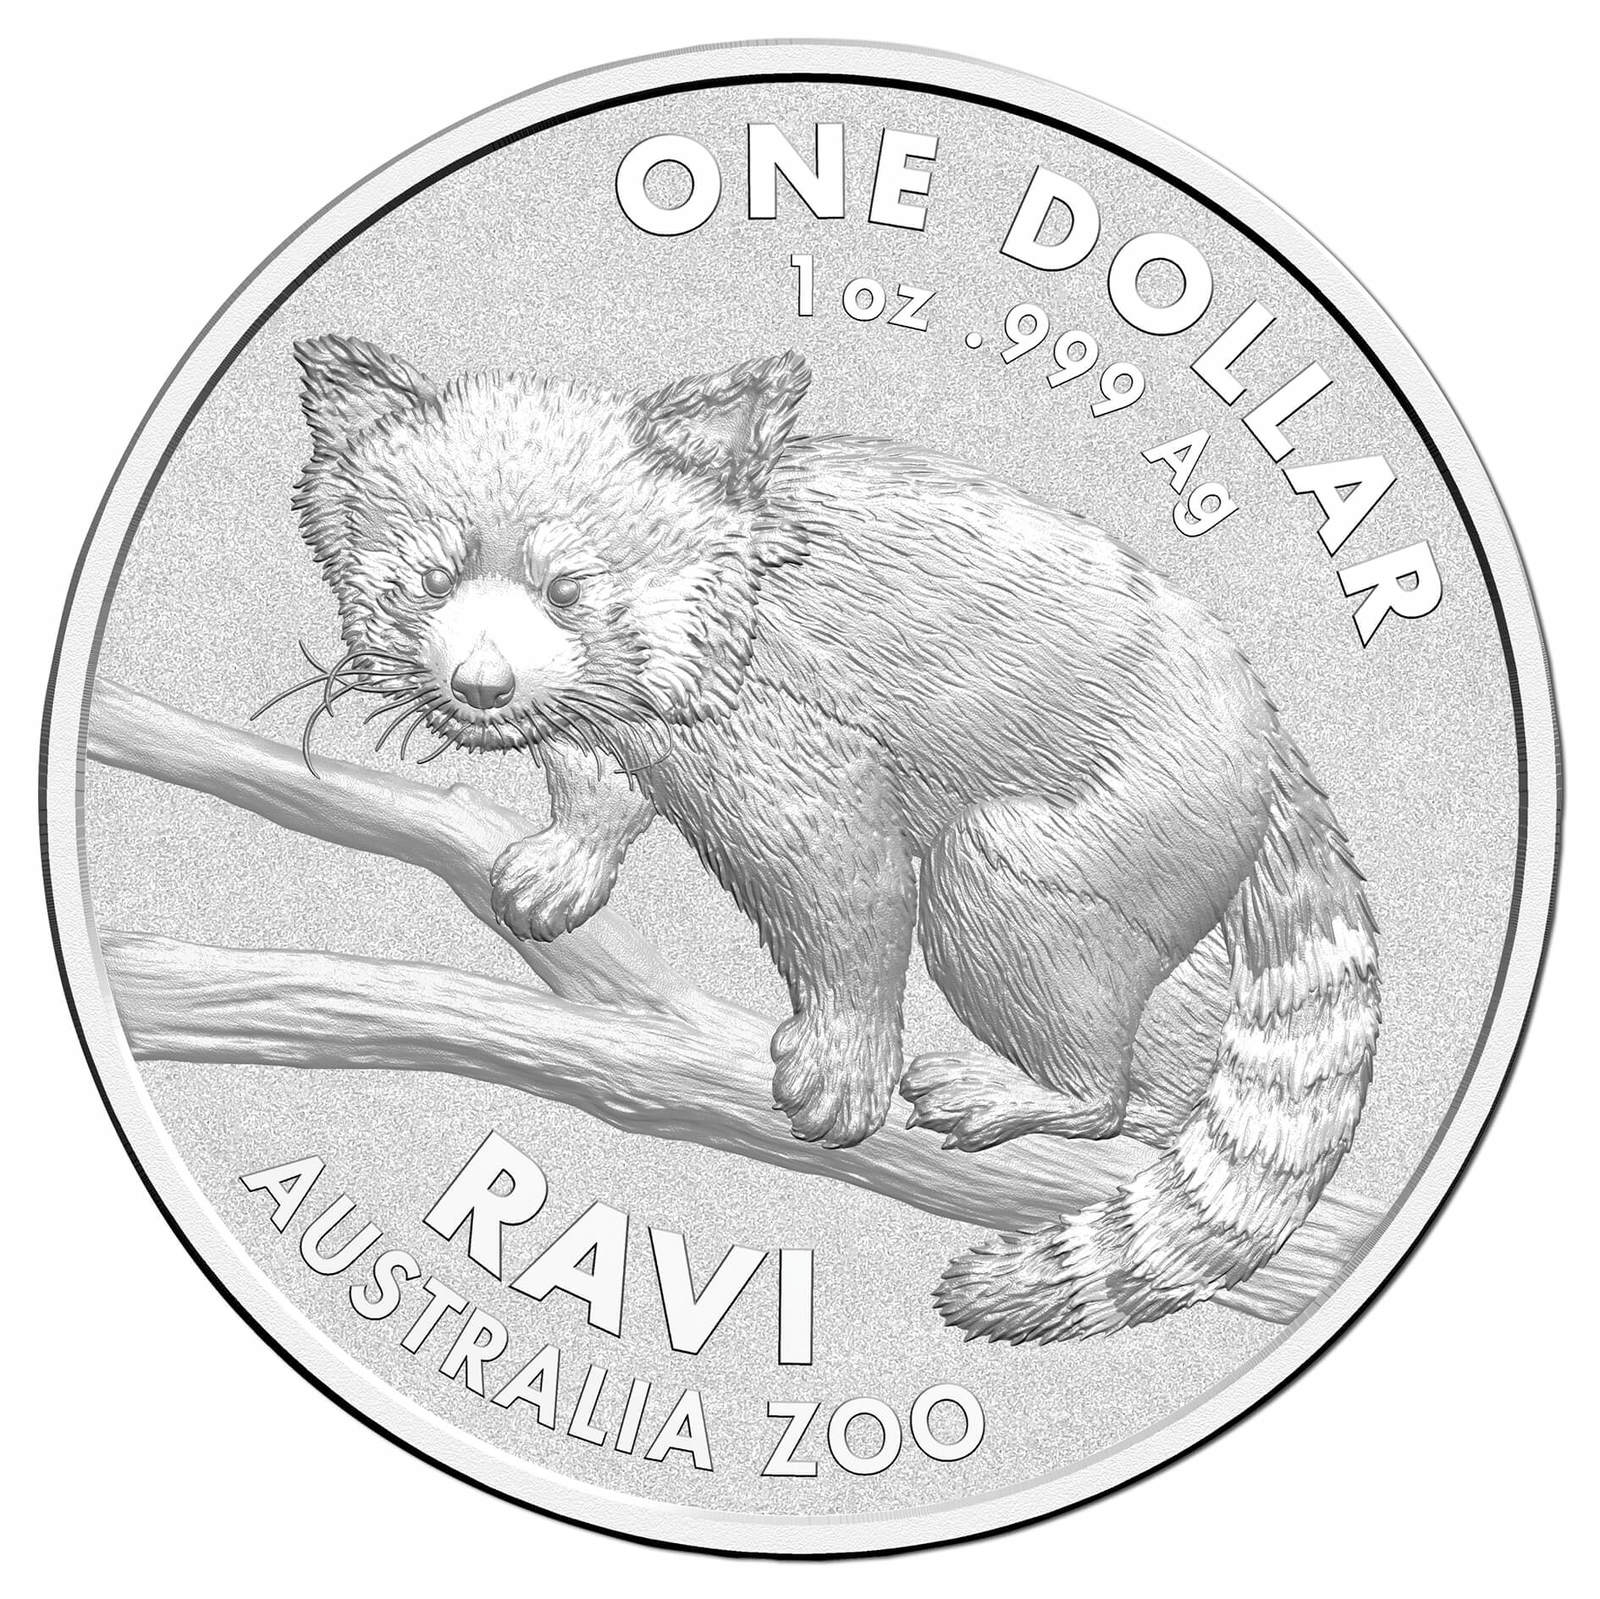 2018 $1 Ravi The Red Panda 1oz Silver Frunc